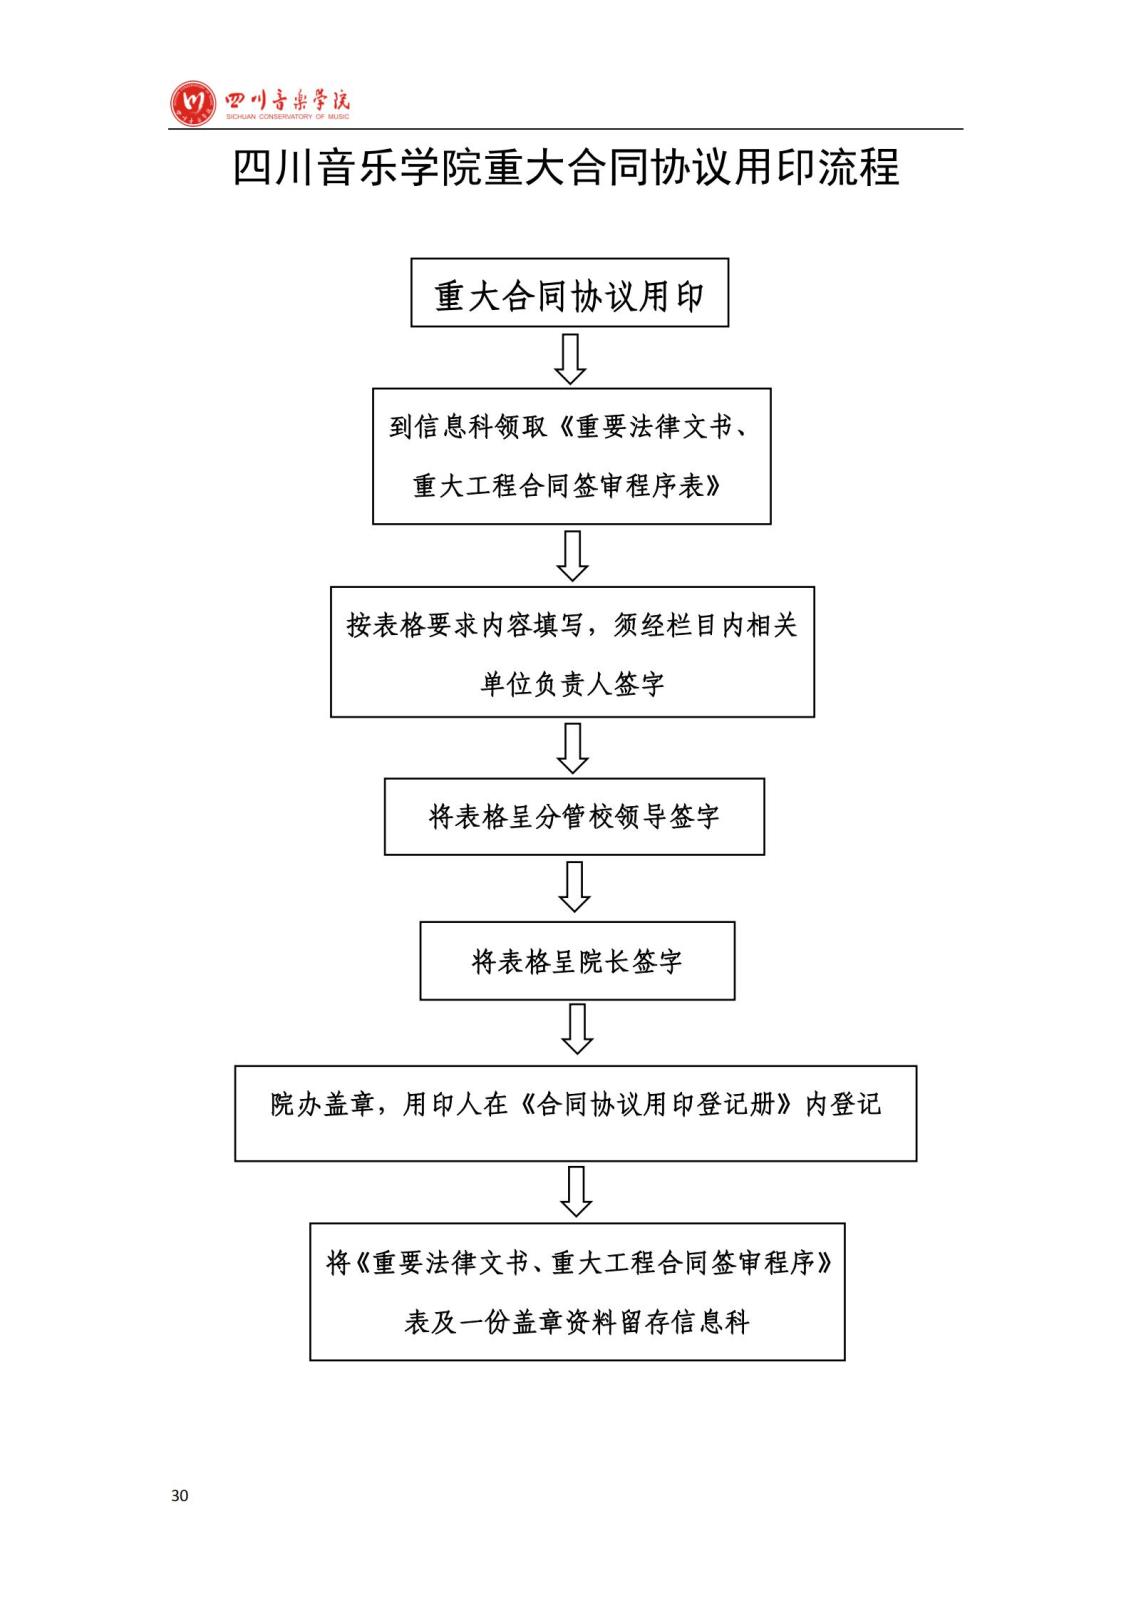 bat365中文官方网站学院办公室规章制度汇编_32.jpg